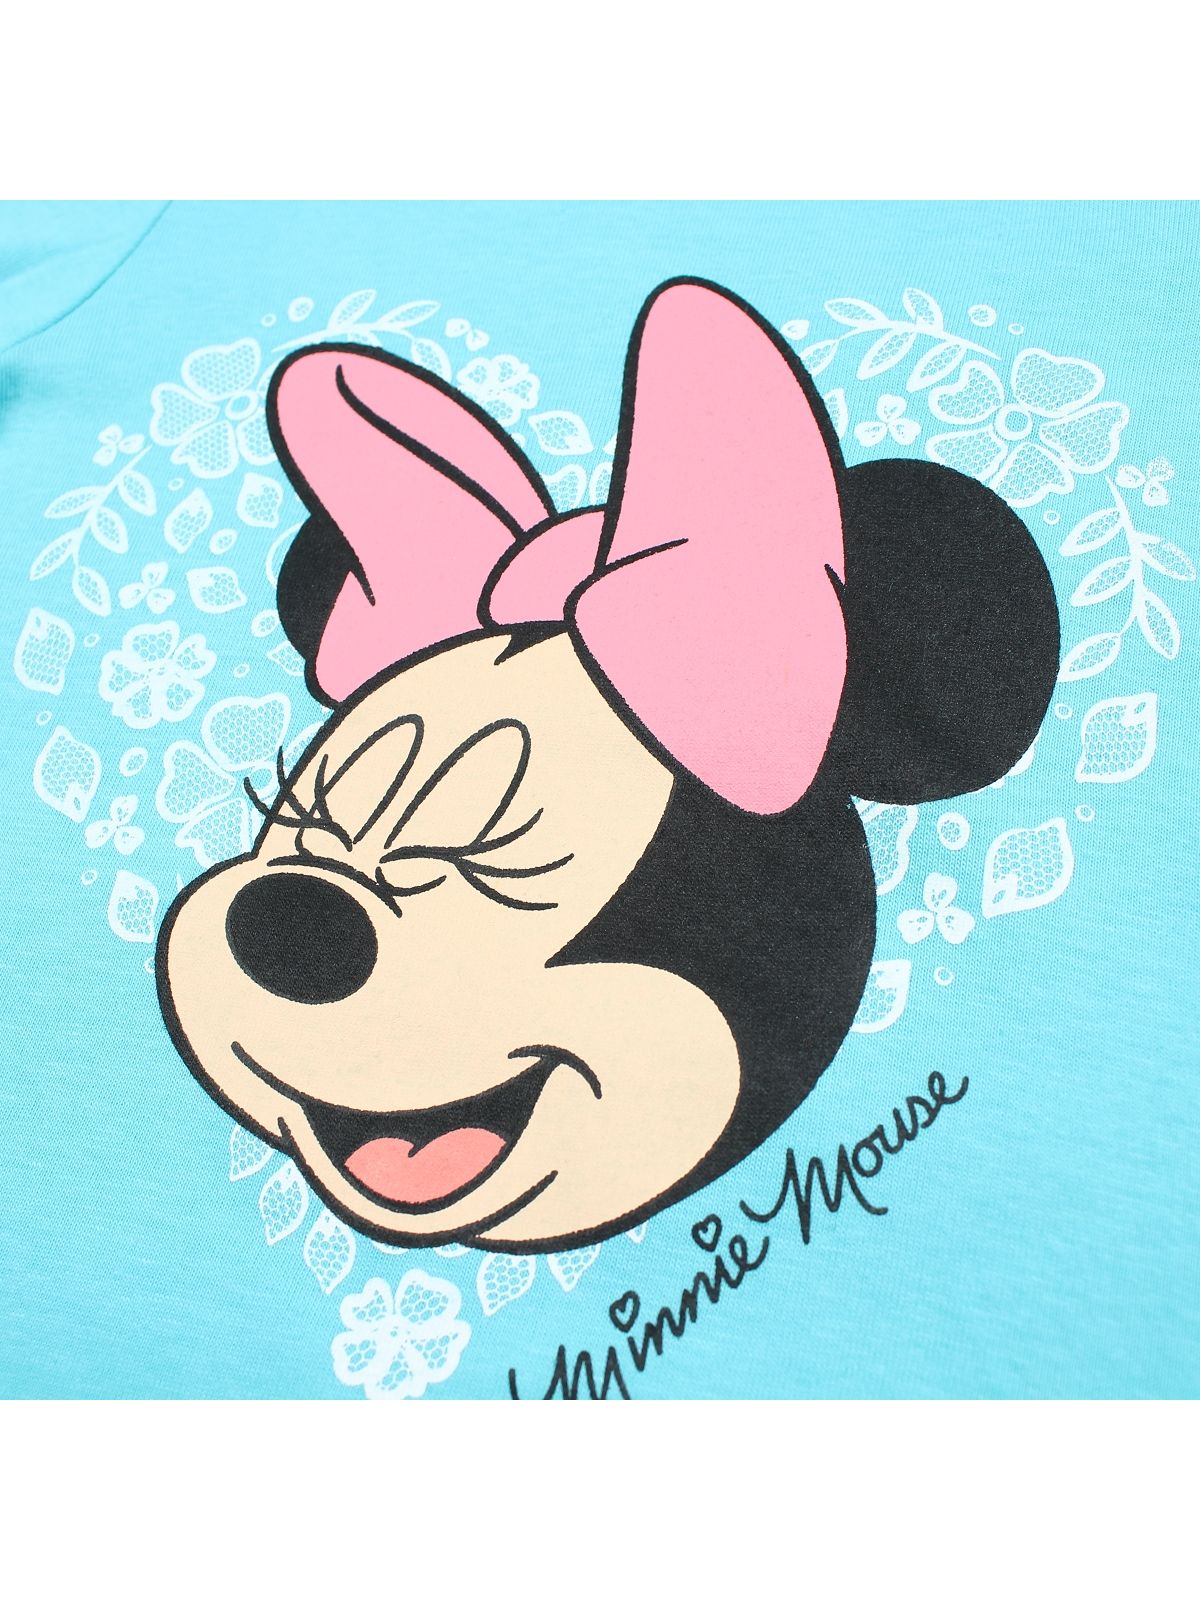 Minnie t-shirt.